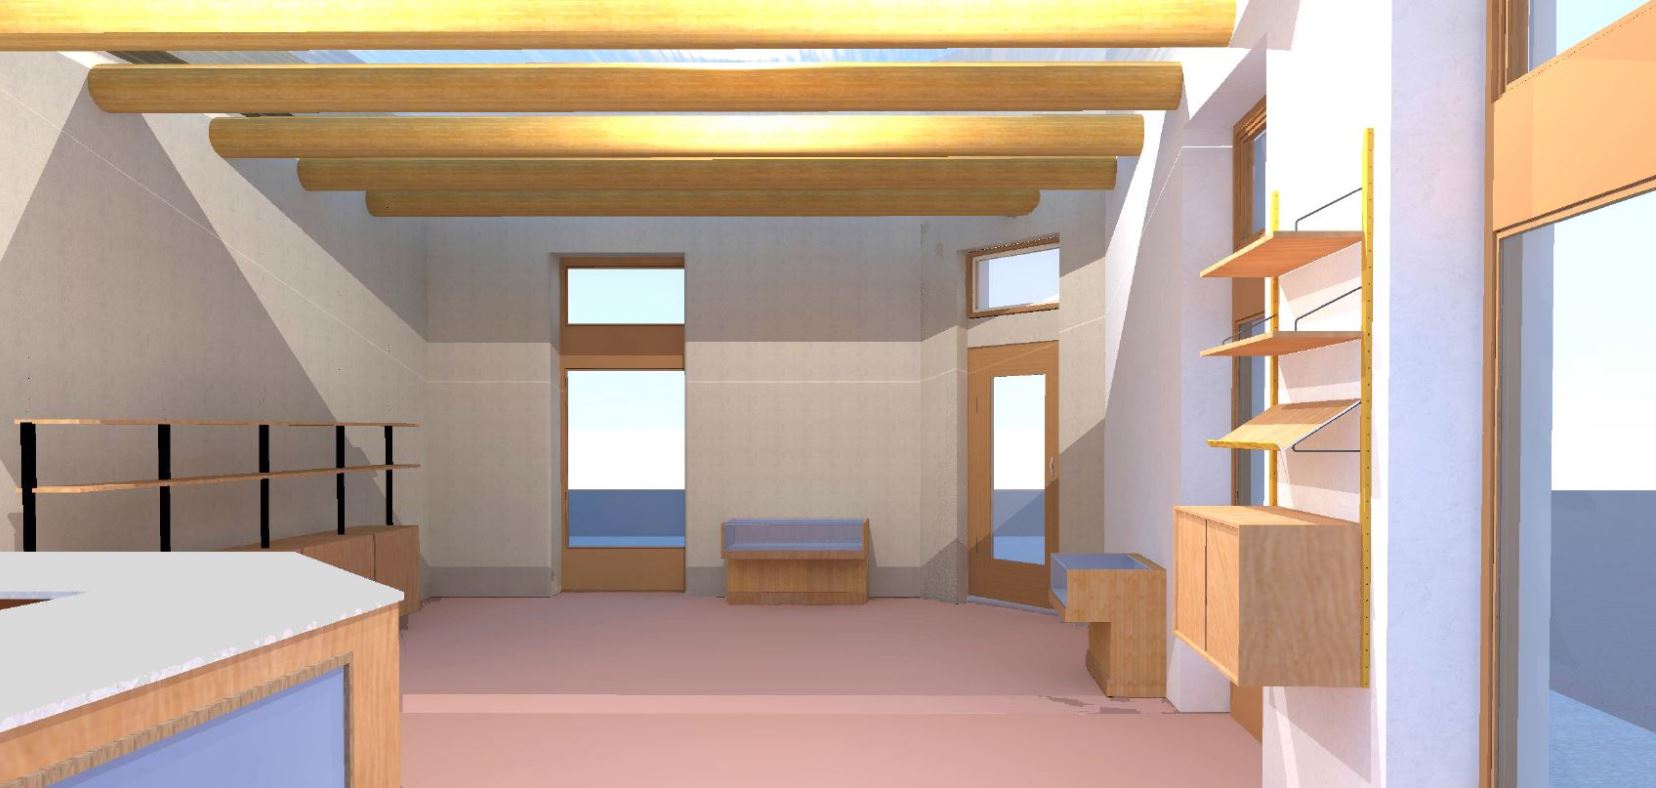 Interior of Proposed Visitor Center Design